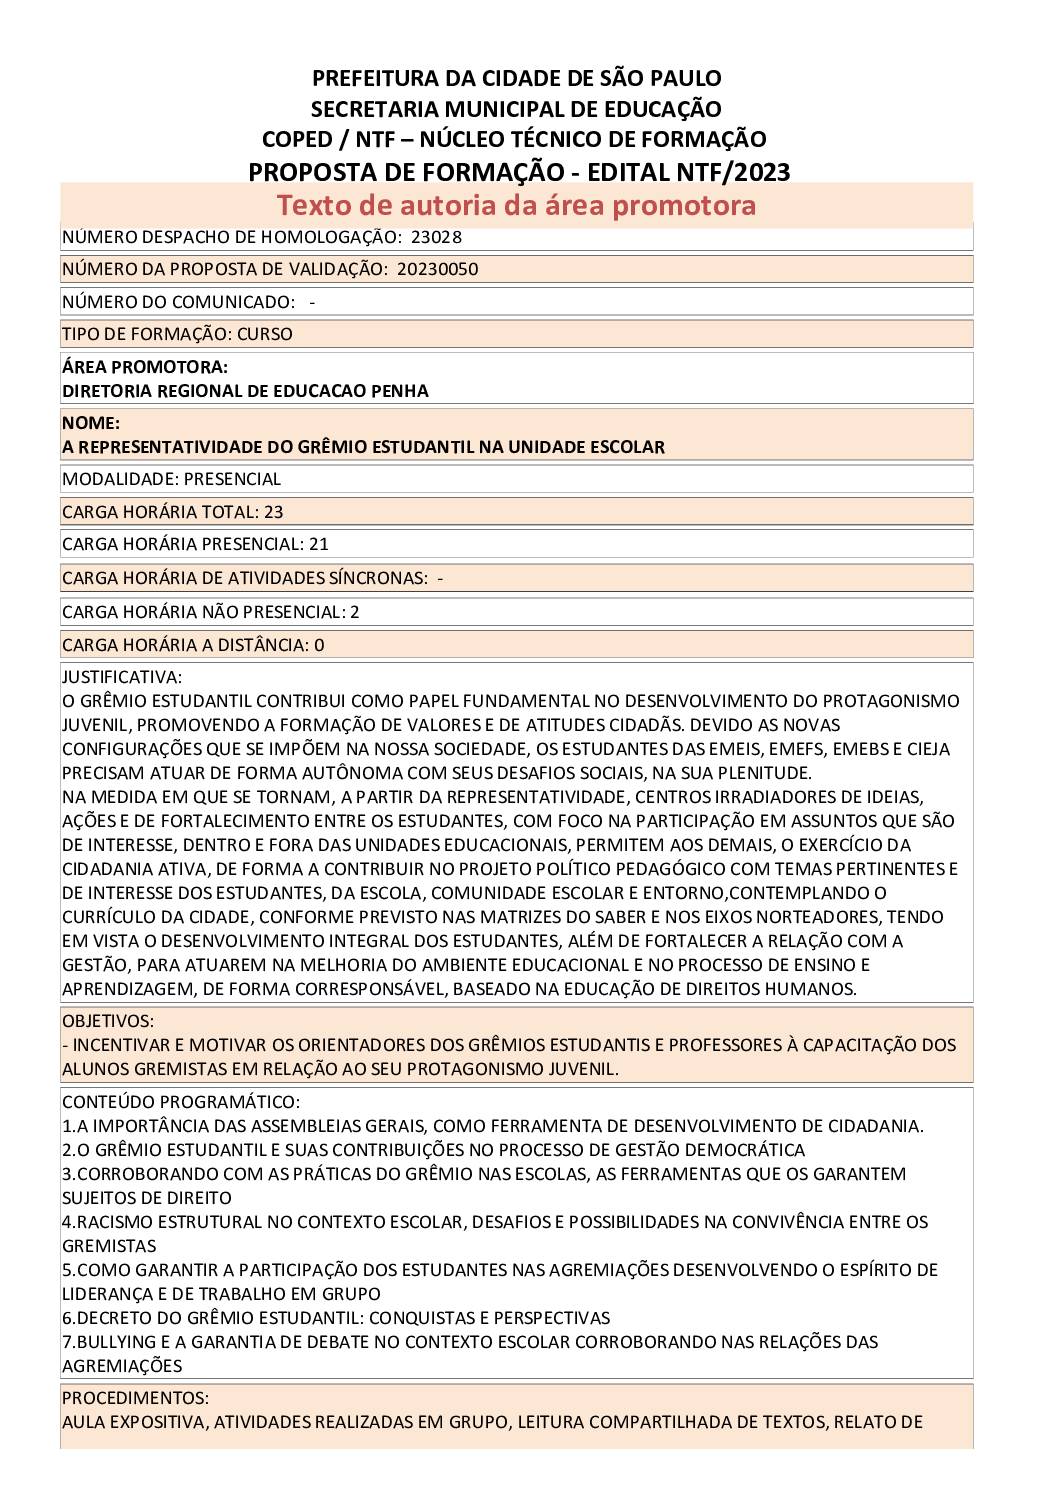 PDF com informações sobre o curso: A REPRESENTATIVIDADE DO GREMIO ESTUDANTIL NA UNIDADE ESCOLAR